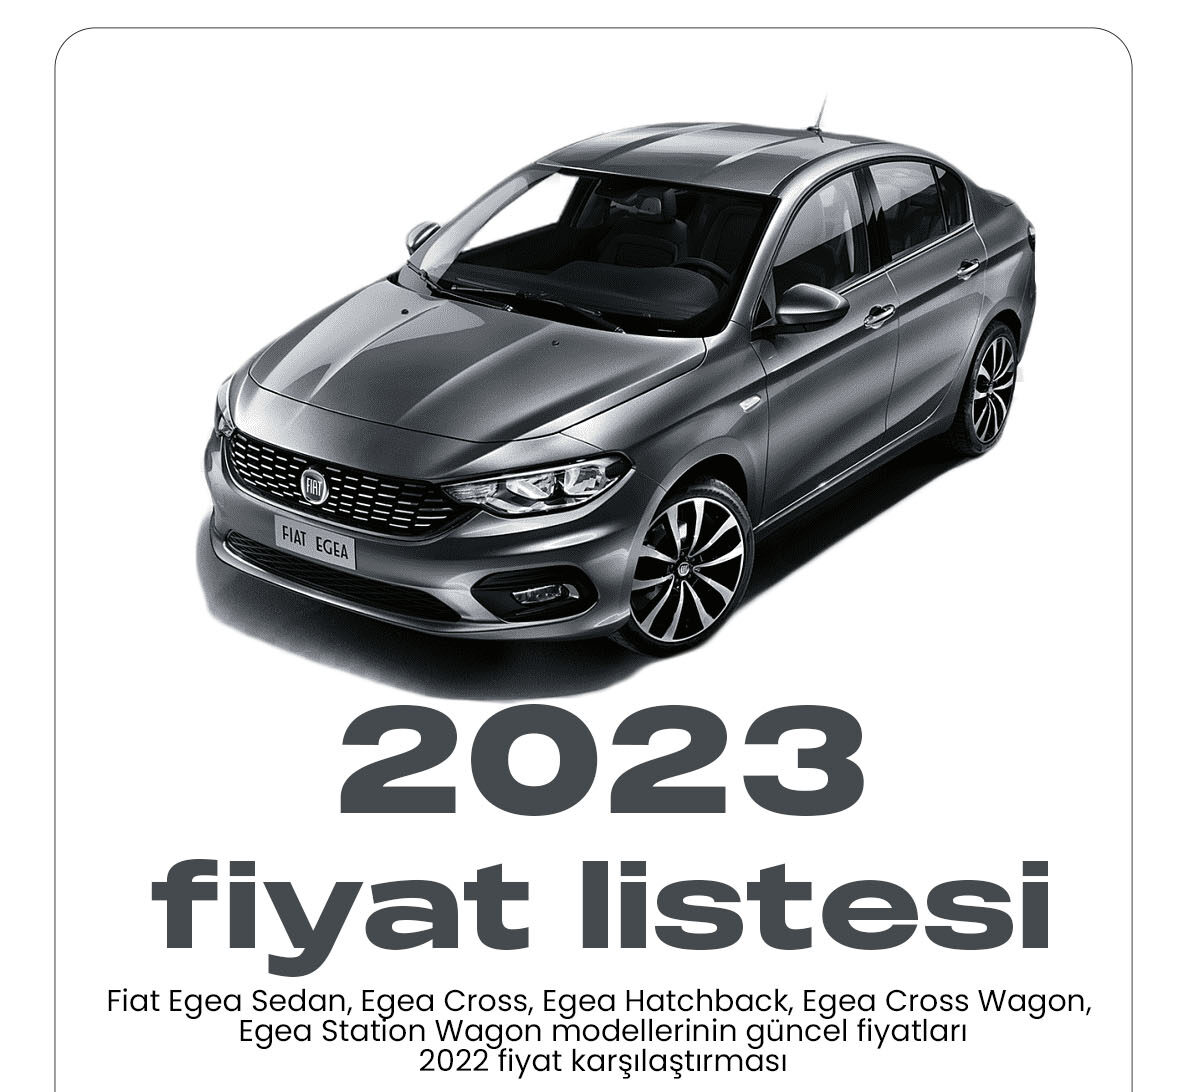 Fiat Egea Ocak fiyat listesi yayımlandı. Fiat Egea modeli ülkemizde en çok tercih edilen araçlar arasında yer alıyor.